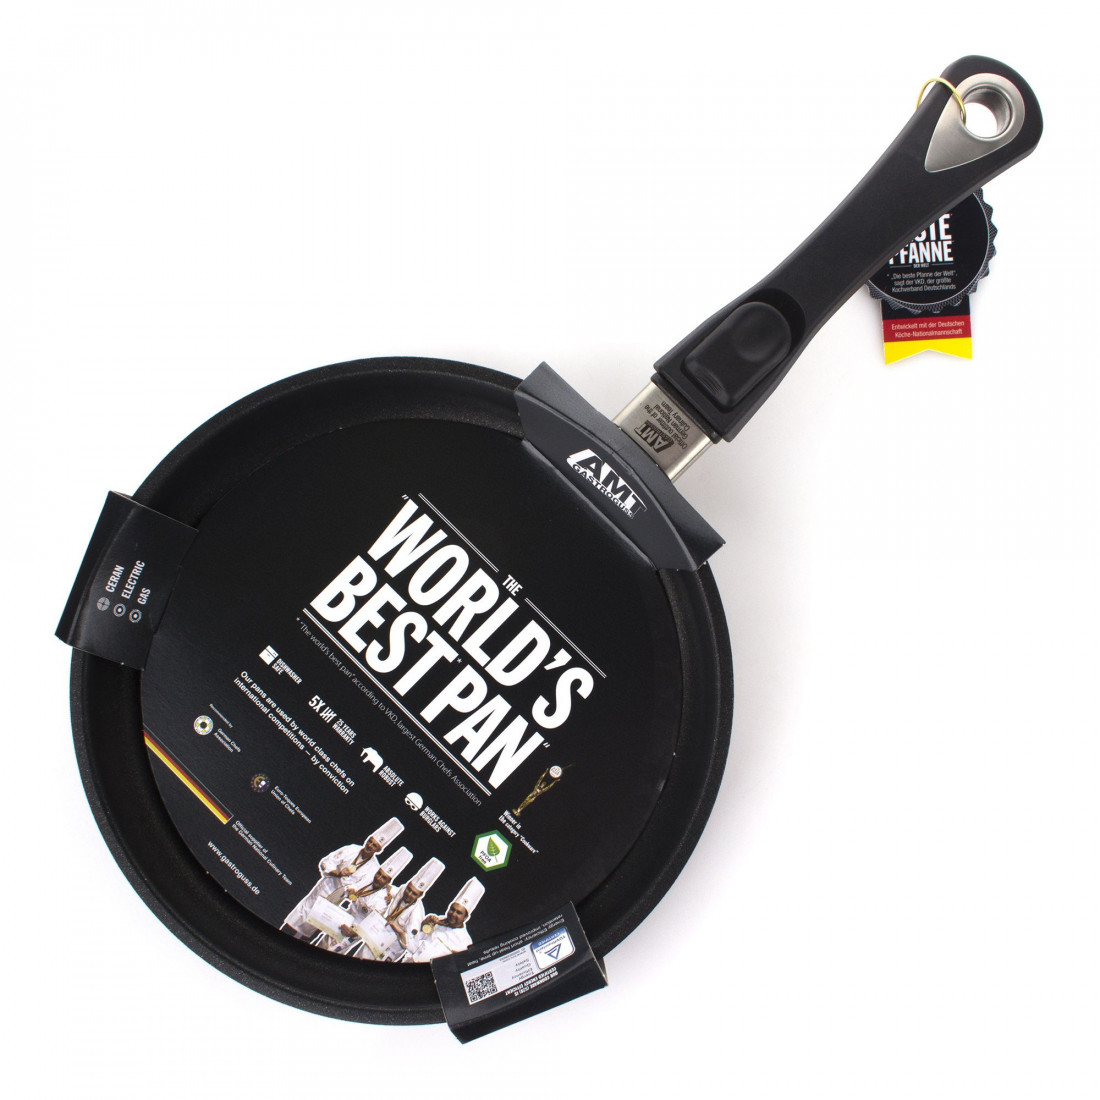 Сковорода с антипригарным покрытием, диаметр 24 см, высота 4 см, съемная ручка, литой алюминий, толщина дна 10 мм, серия Frying Pans, AMT, Германия